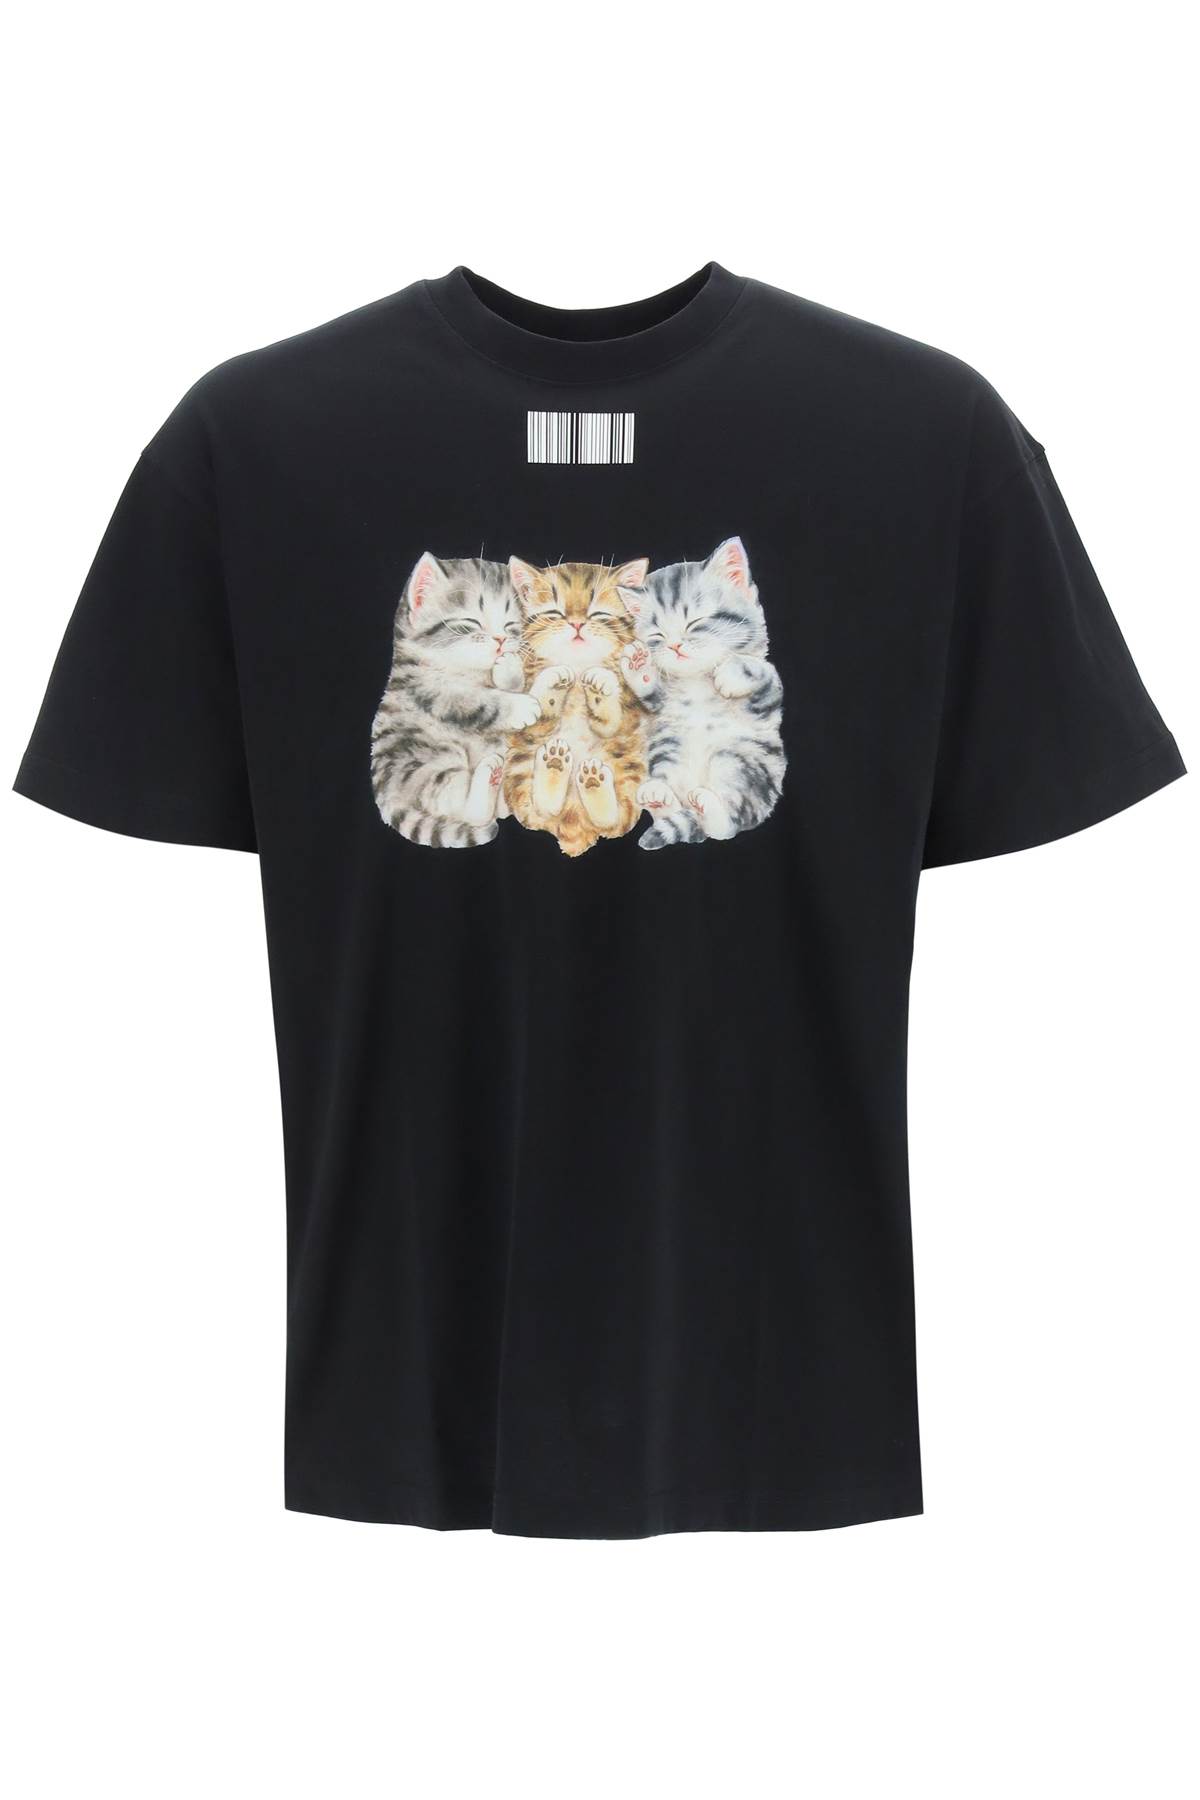 VTMNTS Cute Cat T-shirt